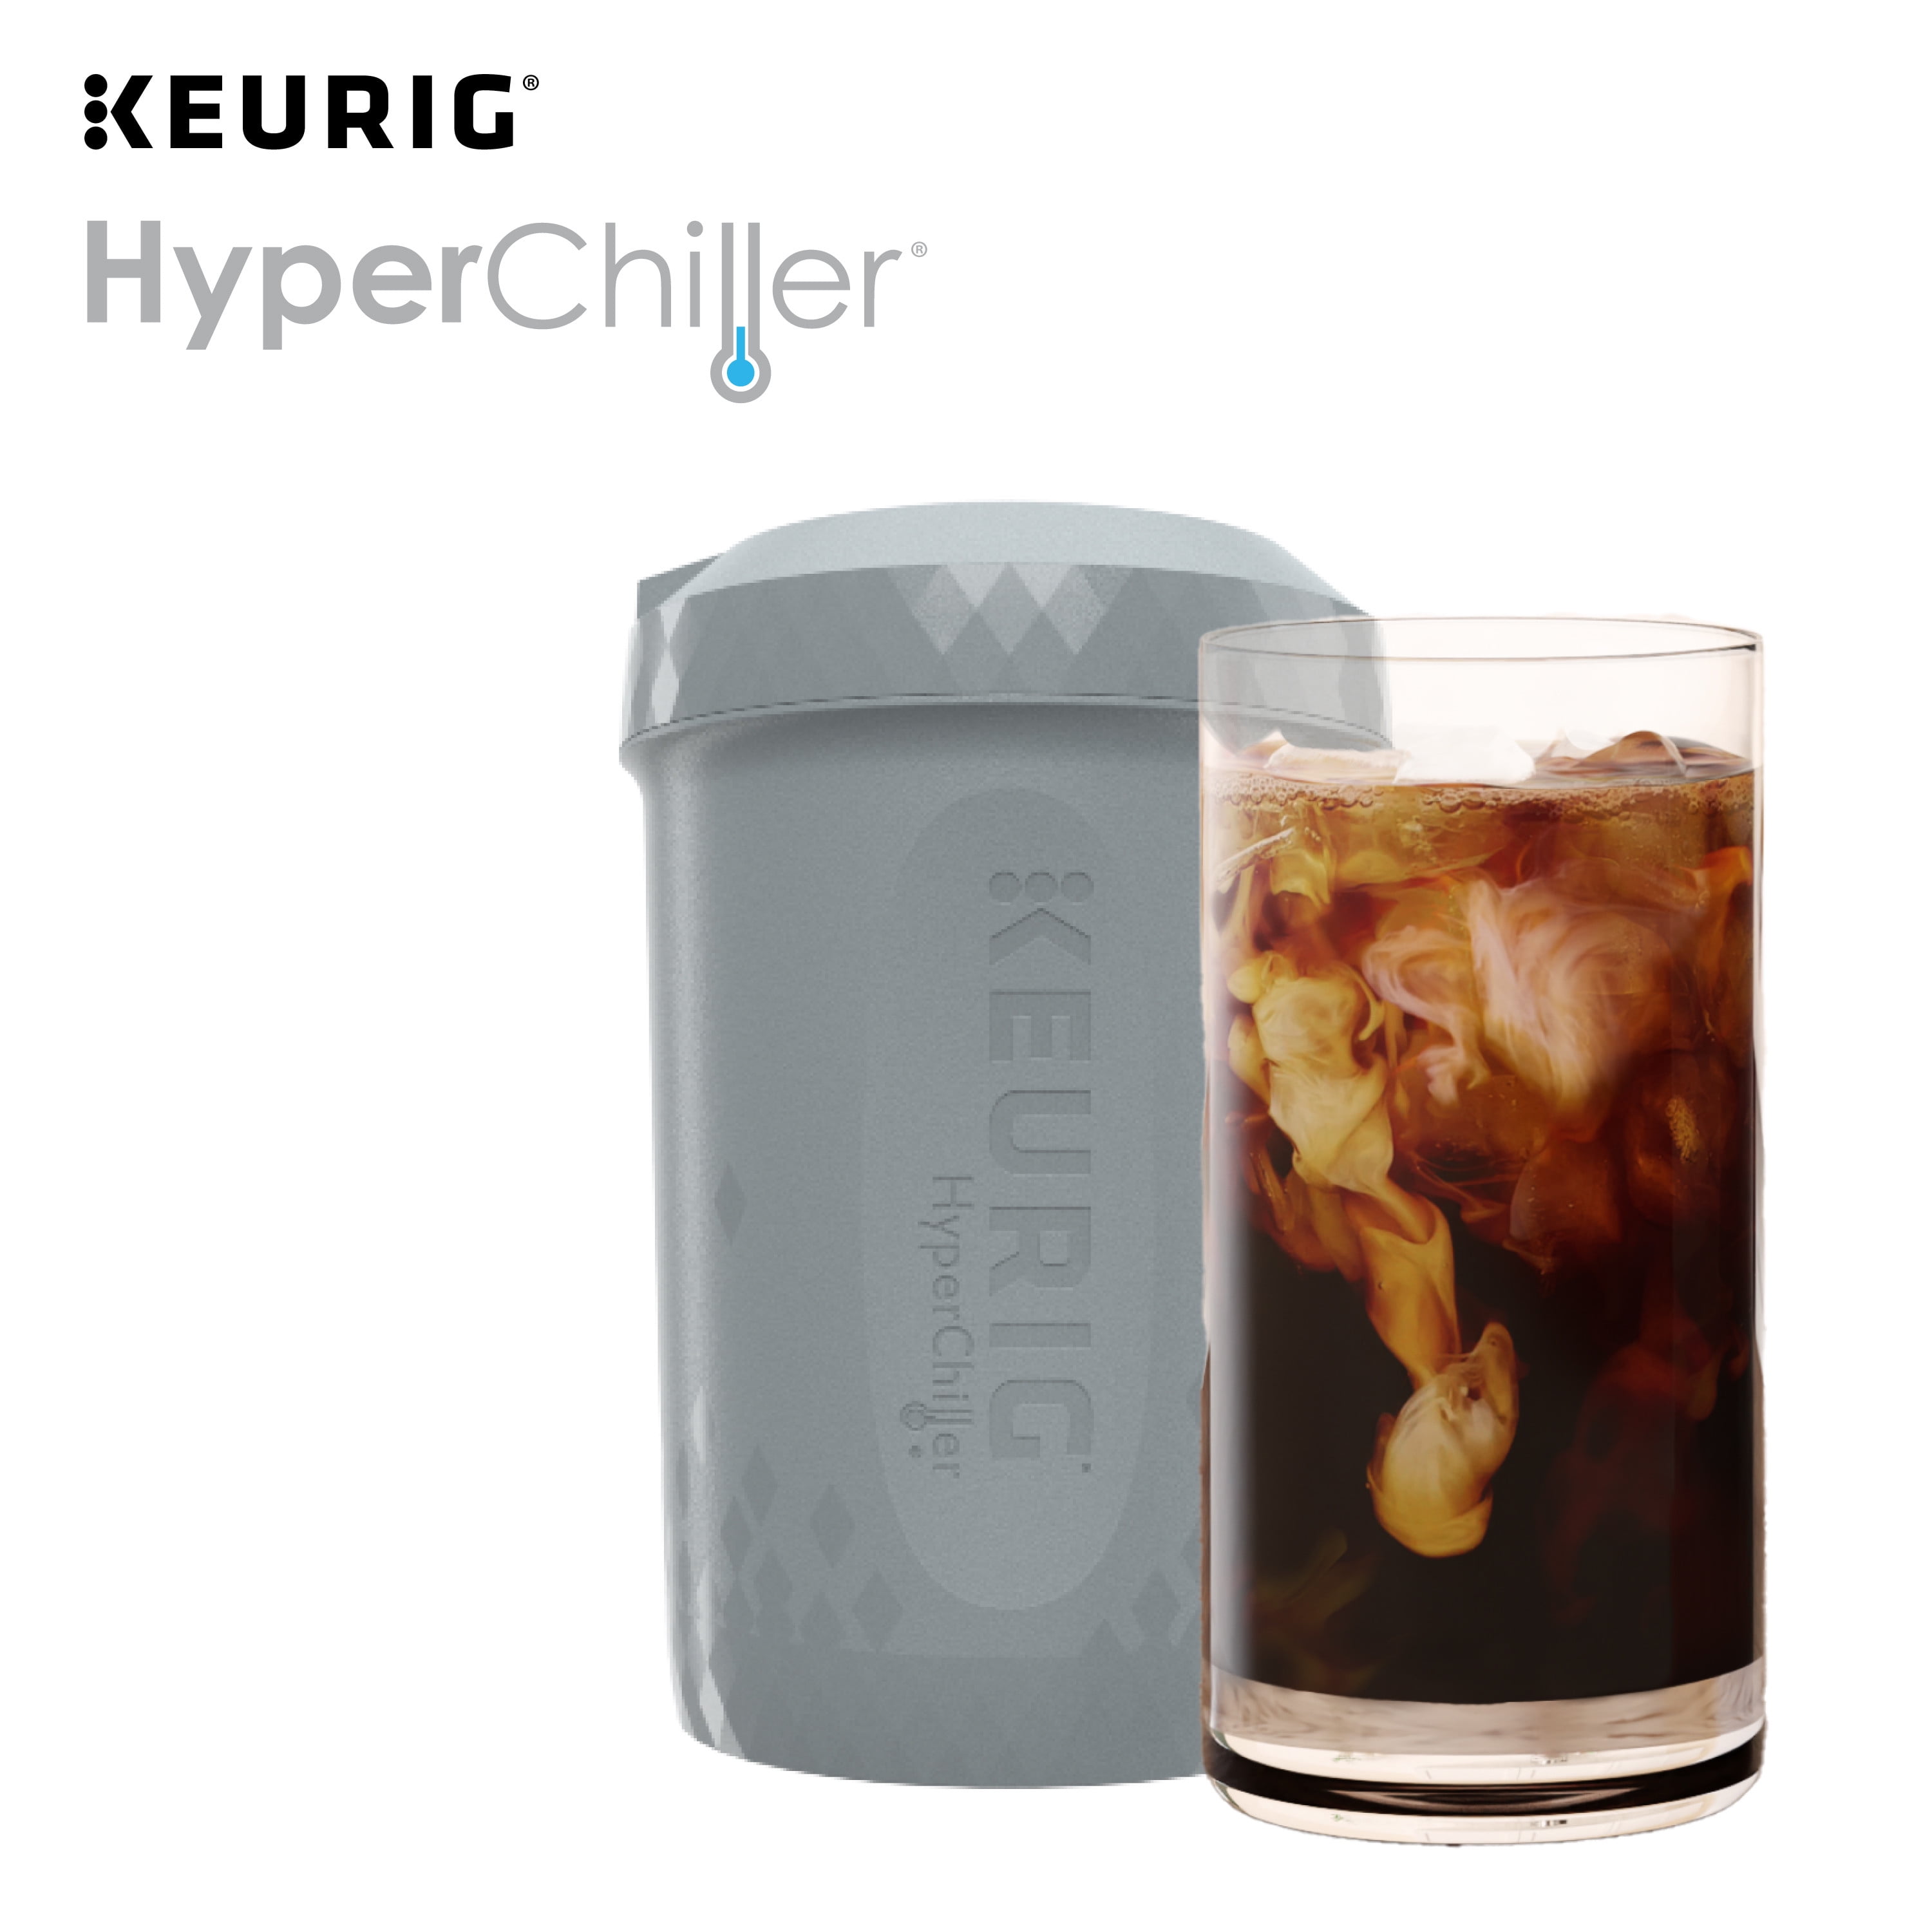 Hyperchiller Iced Cofee Maker